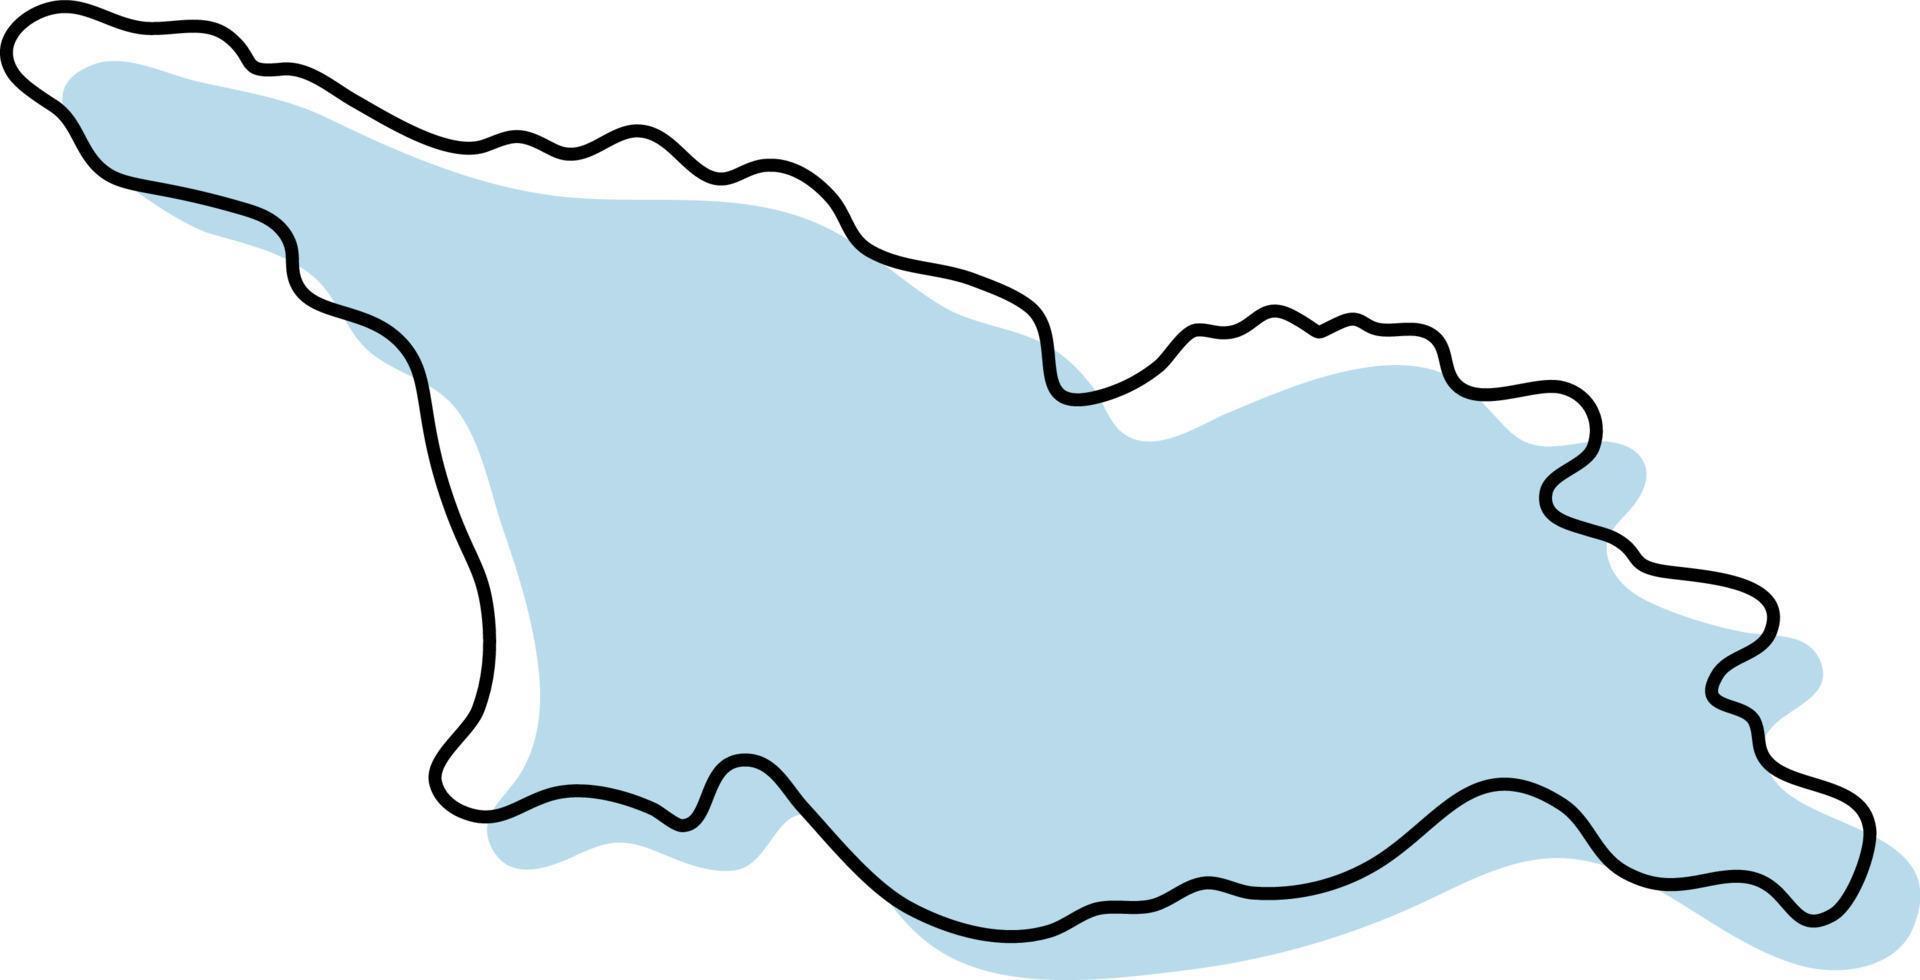 carte simple stylisée de l'icône de la géorgie. croquis bleu carte de la géorgie illustration vectorielle vecteur